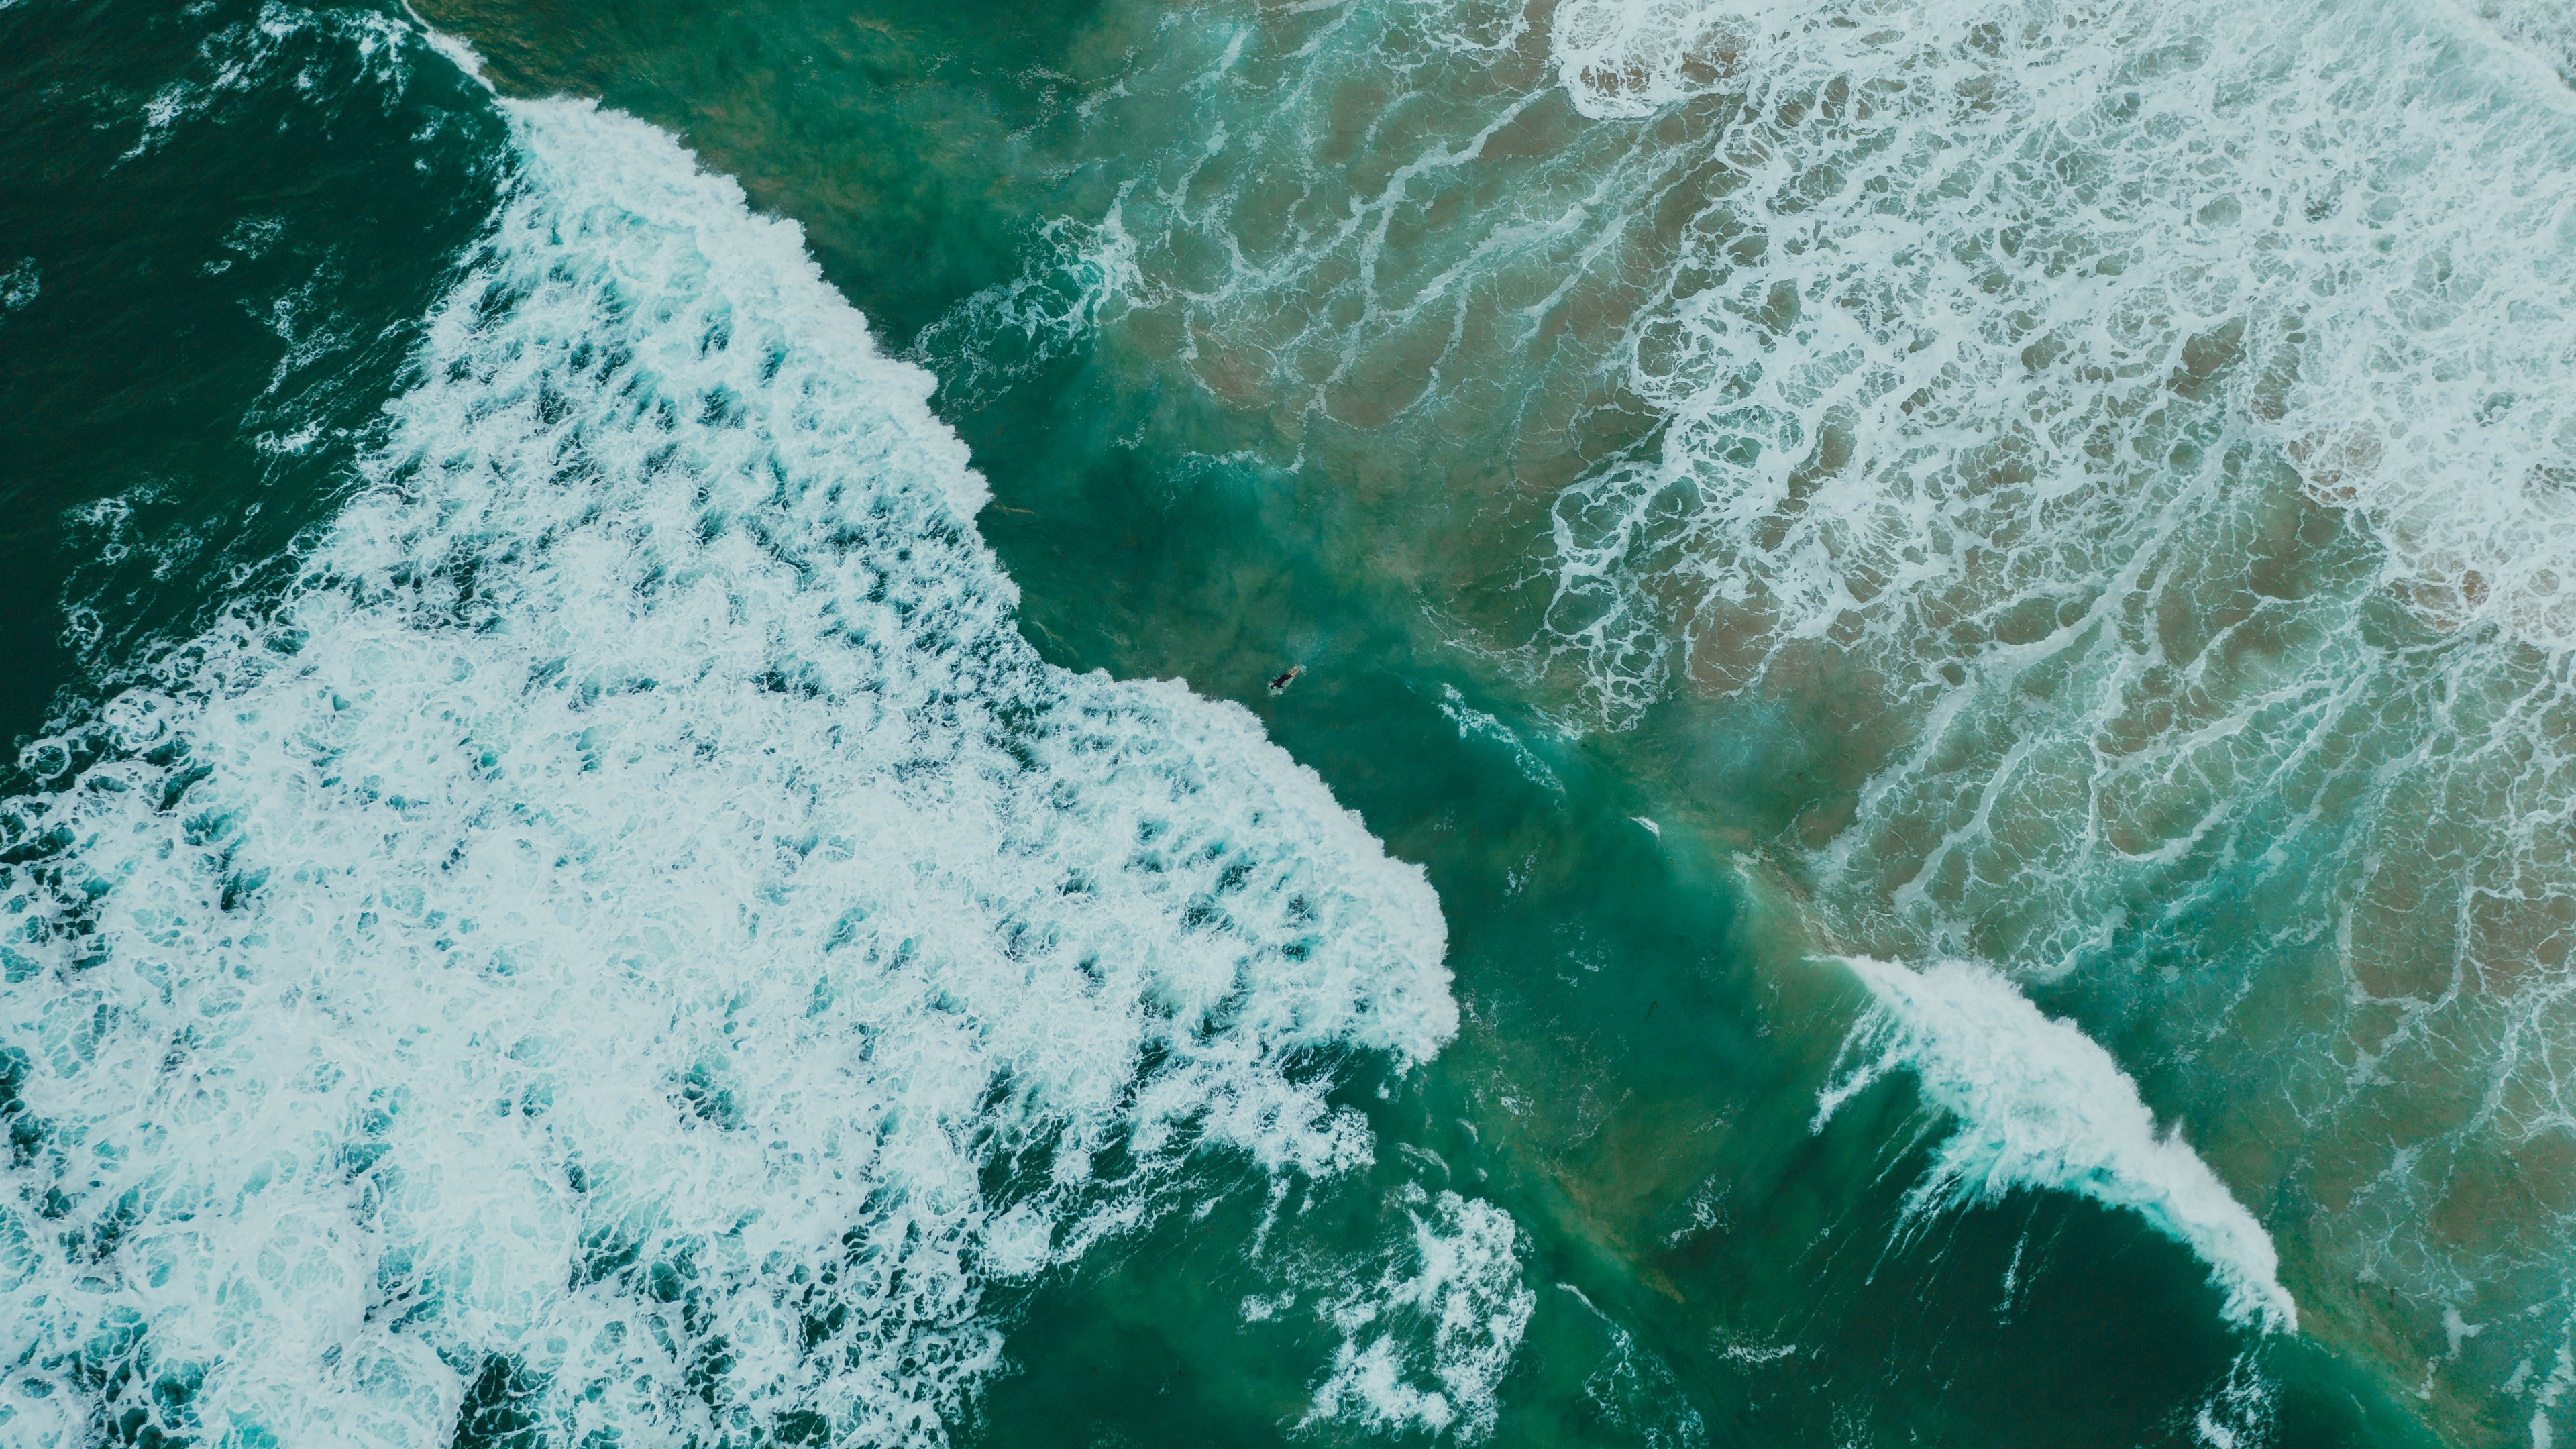 Ozean, Meer, Wind Welle, Wasser, Welle. Wallpaper in 3840x2160 Resolution